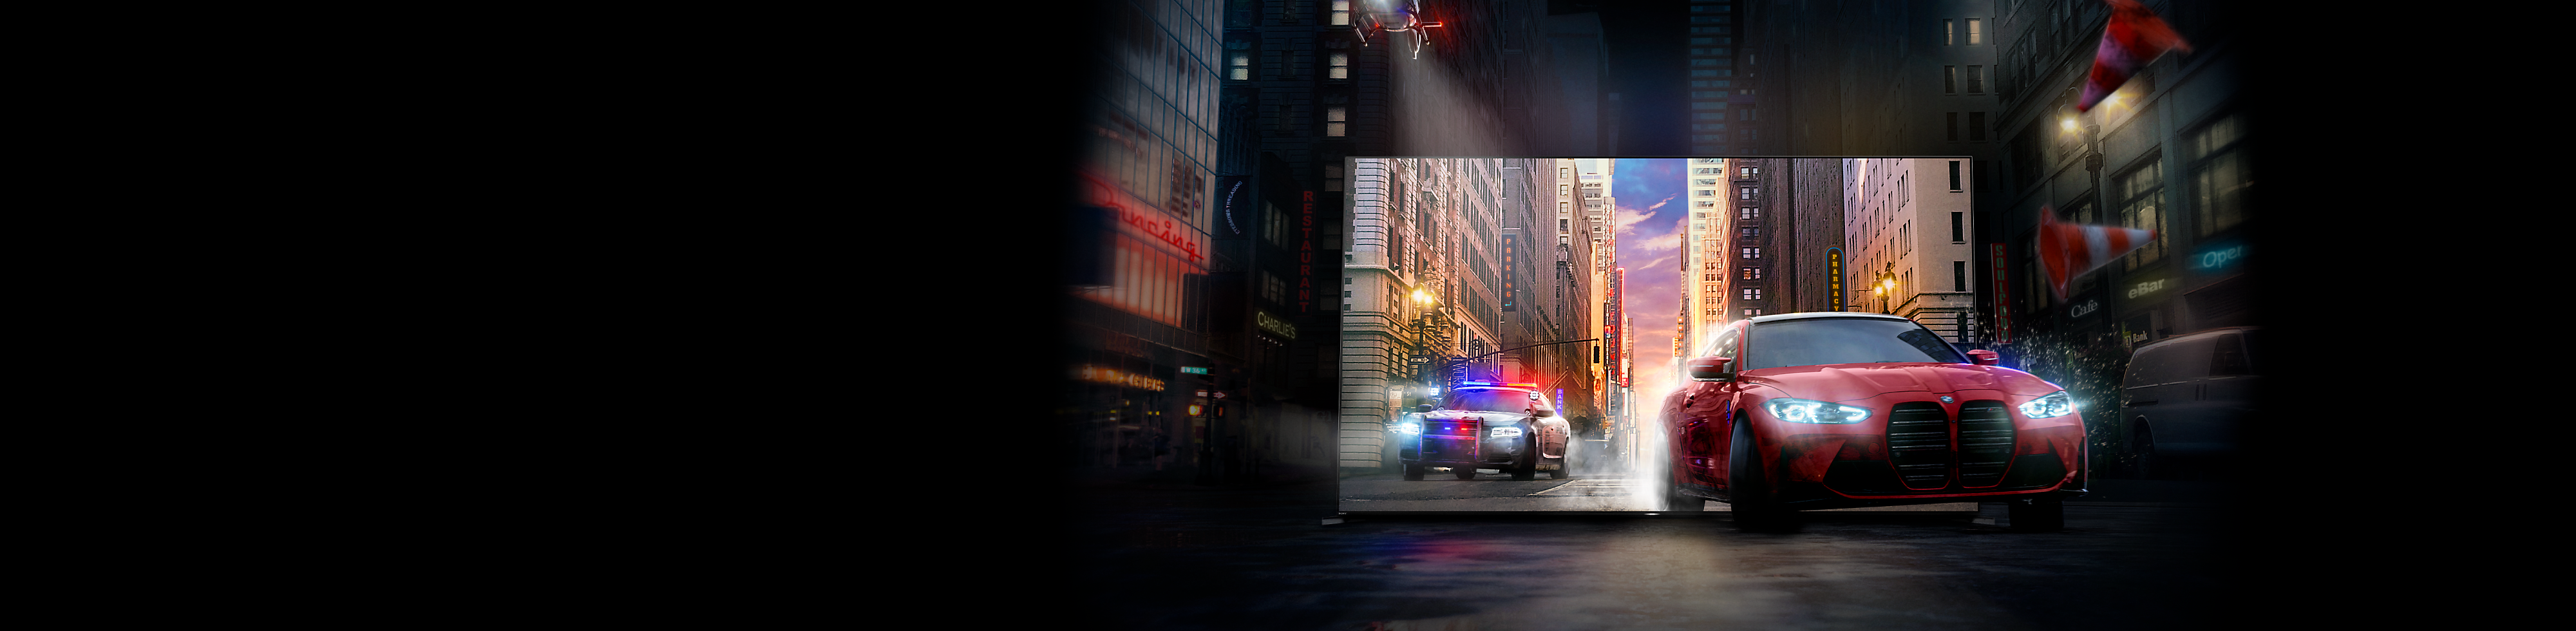 Policejní vozidlo sleduje červené auto, jak vyjíždí z televizní obrazovky BRAVIA do městských ulic.